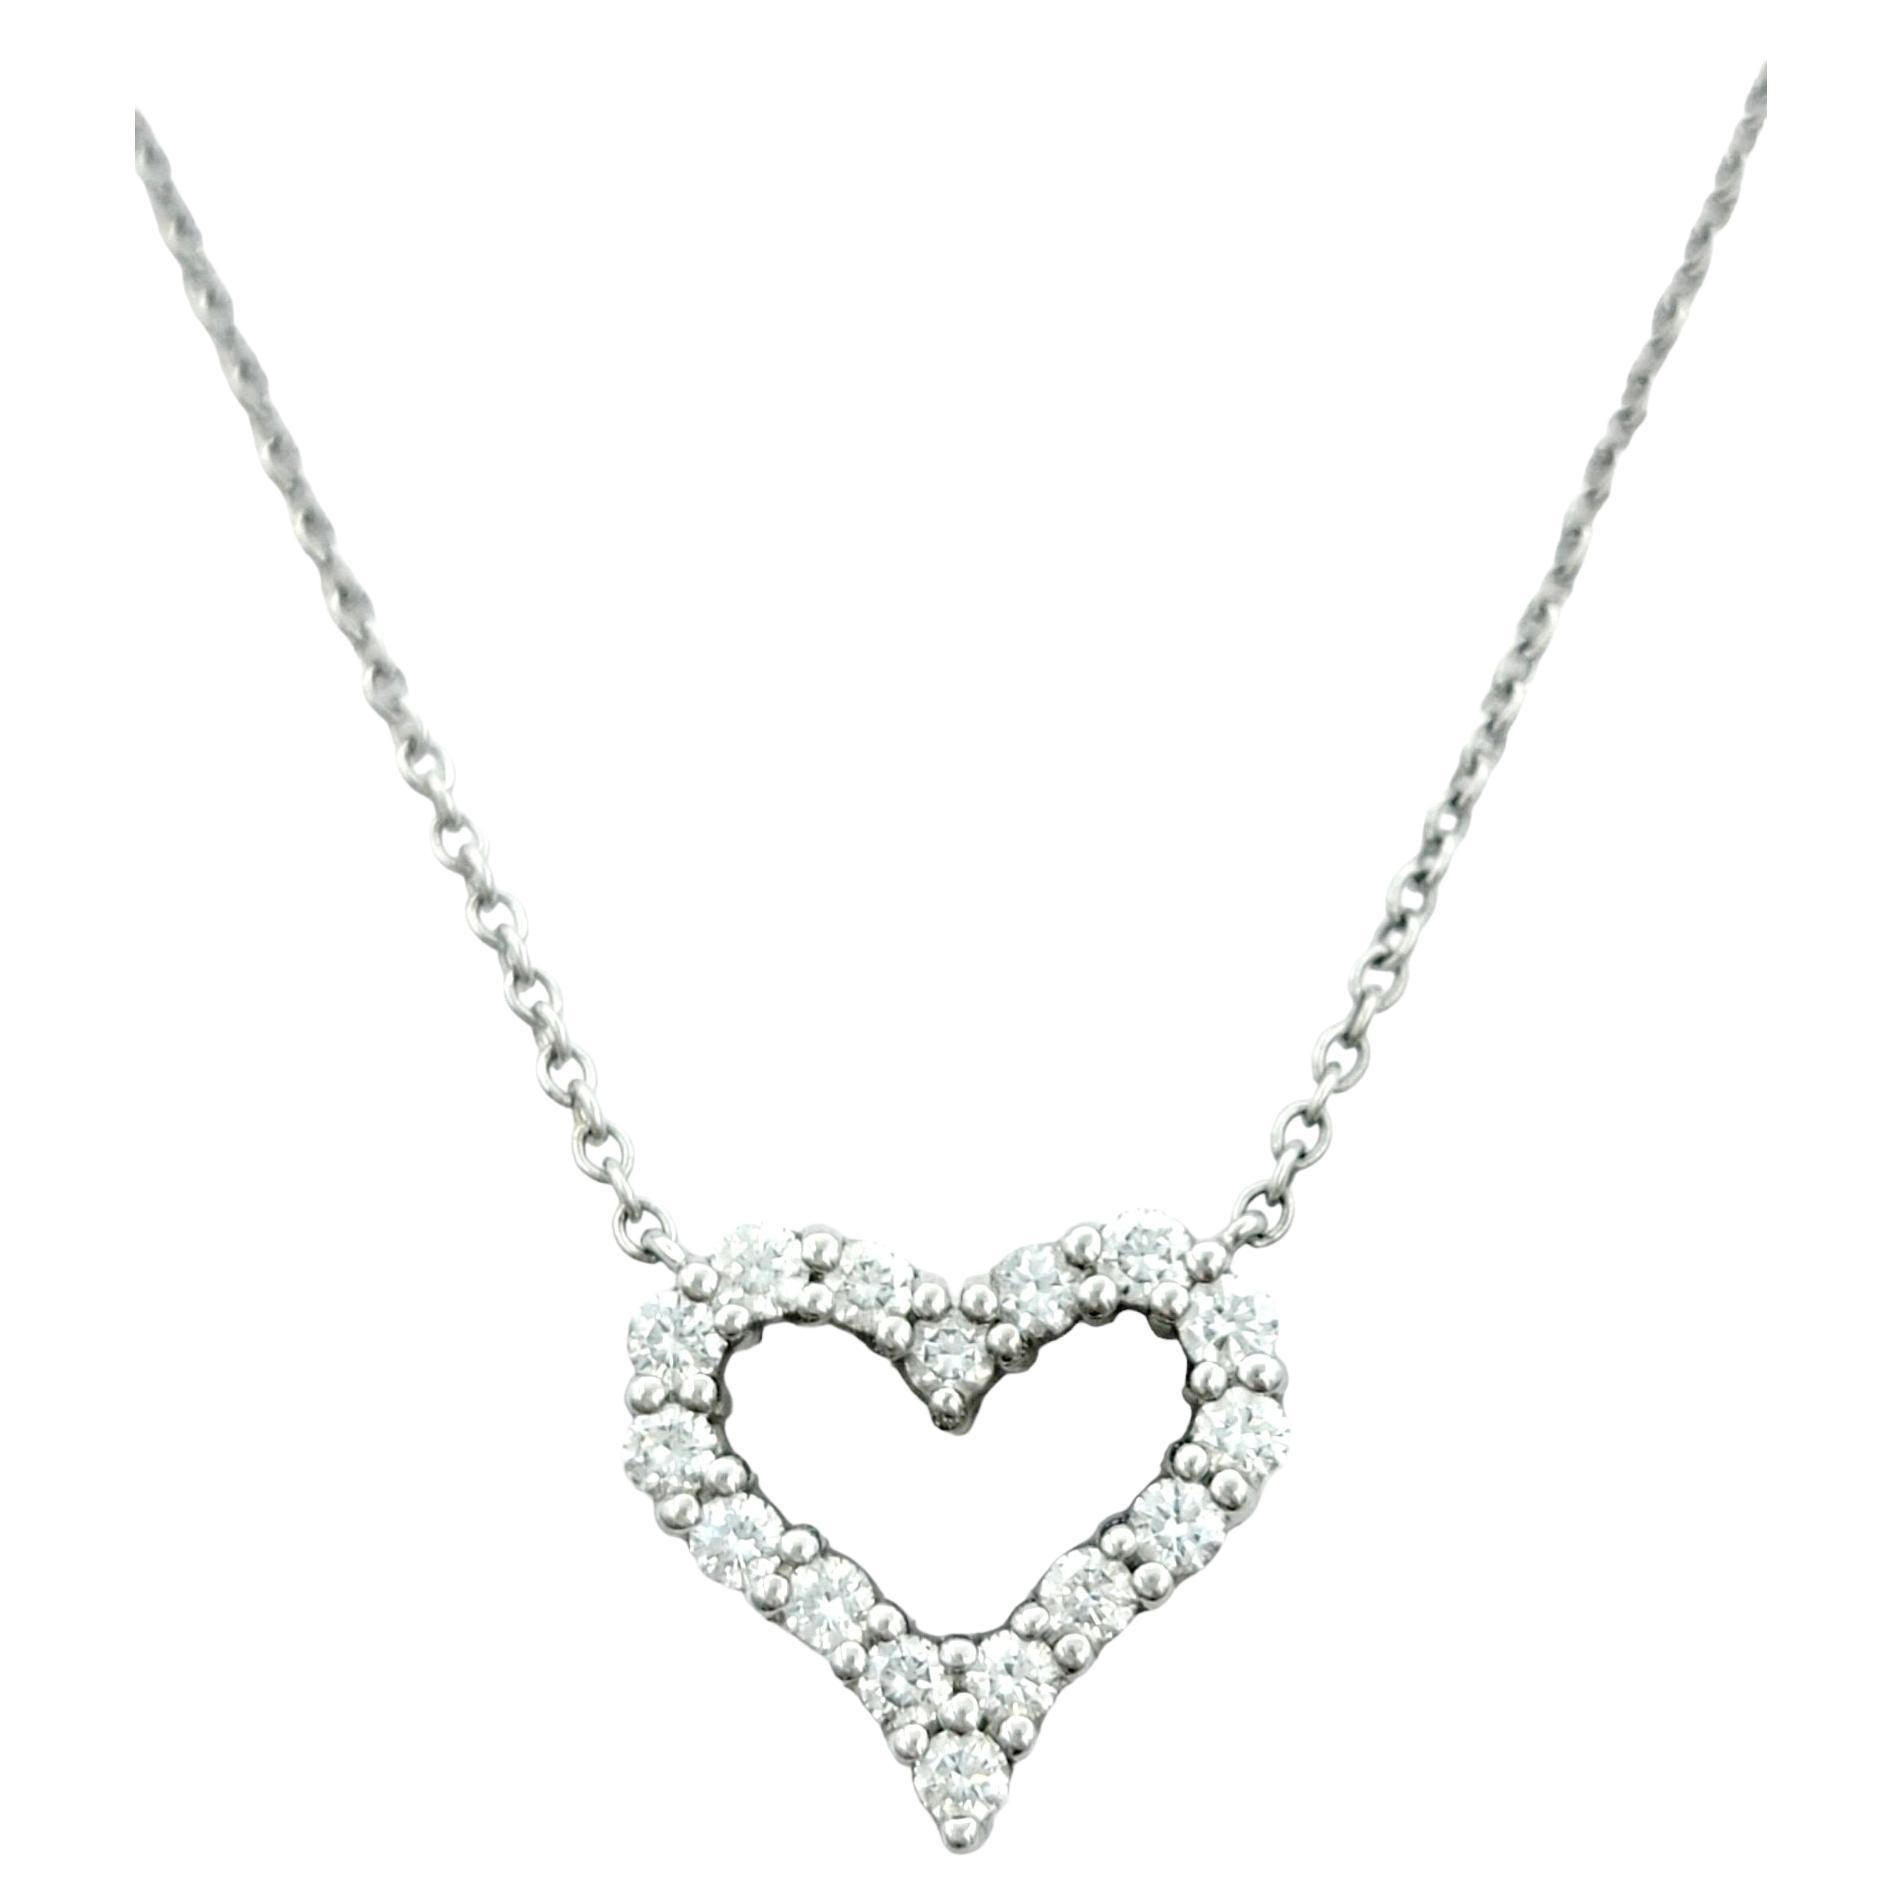 Tiffany & Co. Round Diamond Open Heart Pendant Necklace in Platinum, F-G / VS1-2